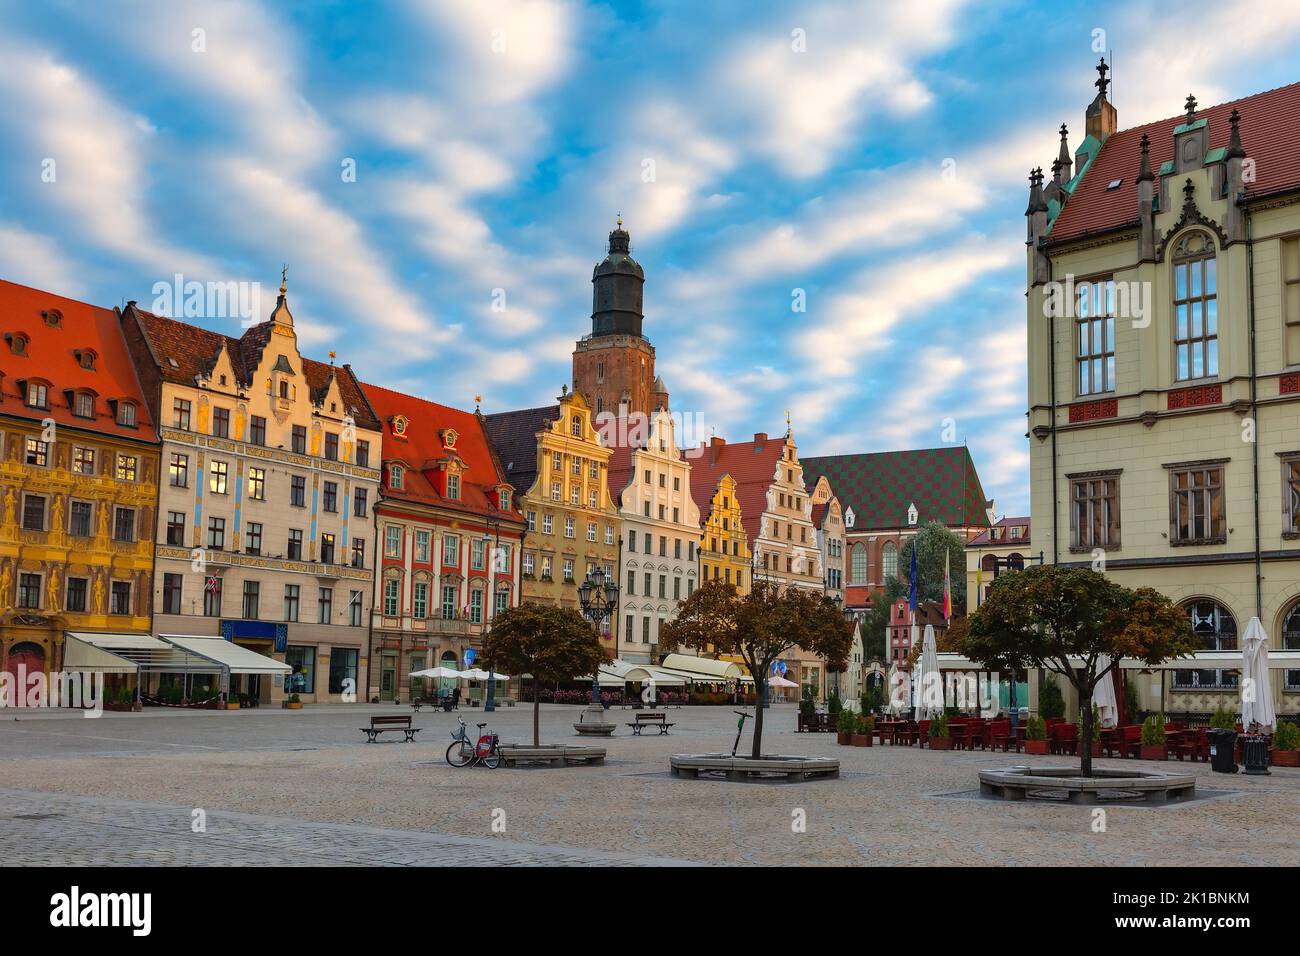 Bunte traditionelle historische Häuser auf dem Marktplatz am sonnigen Morgen, Altstadt von Breslau, Polen Stockfoto